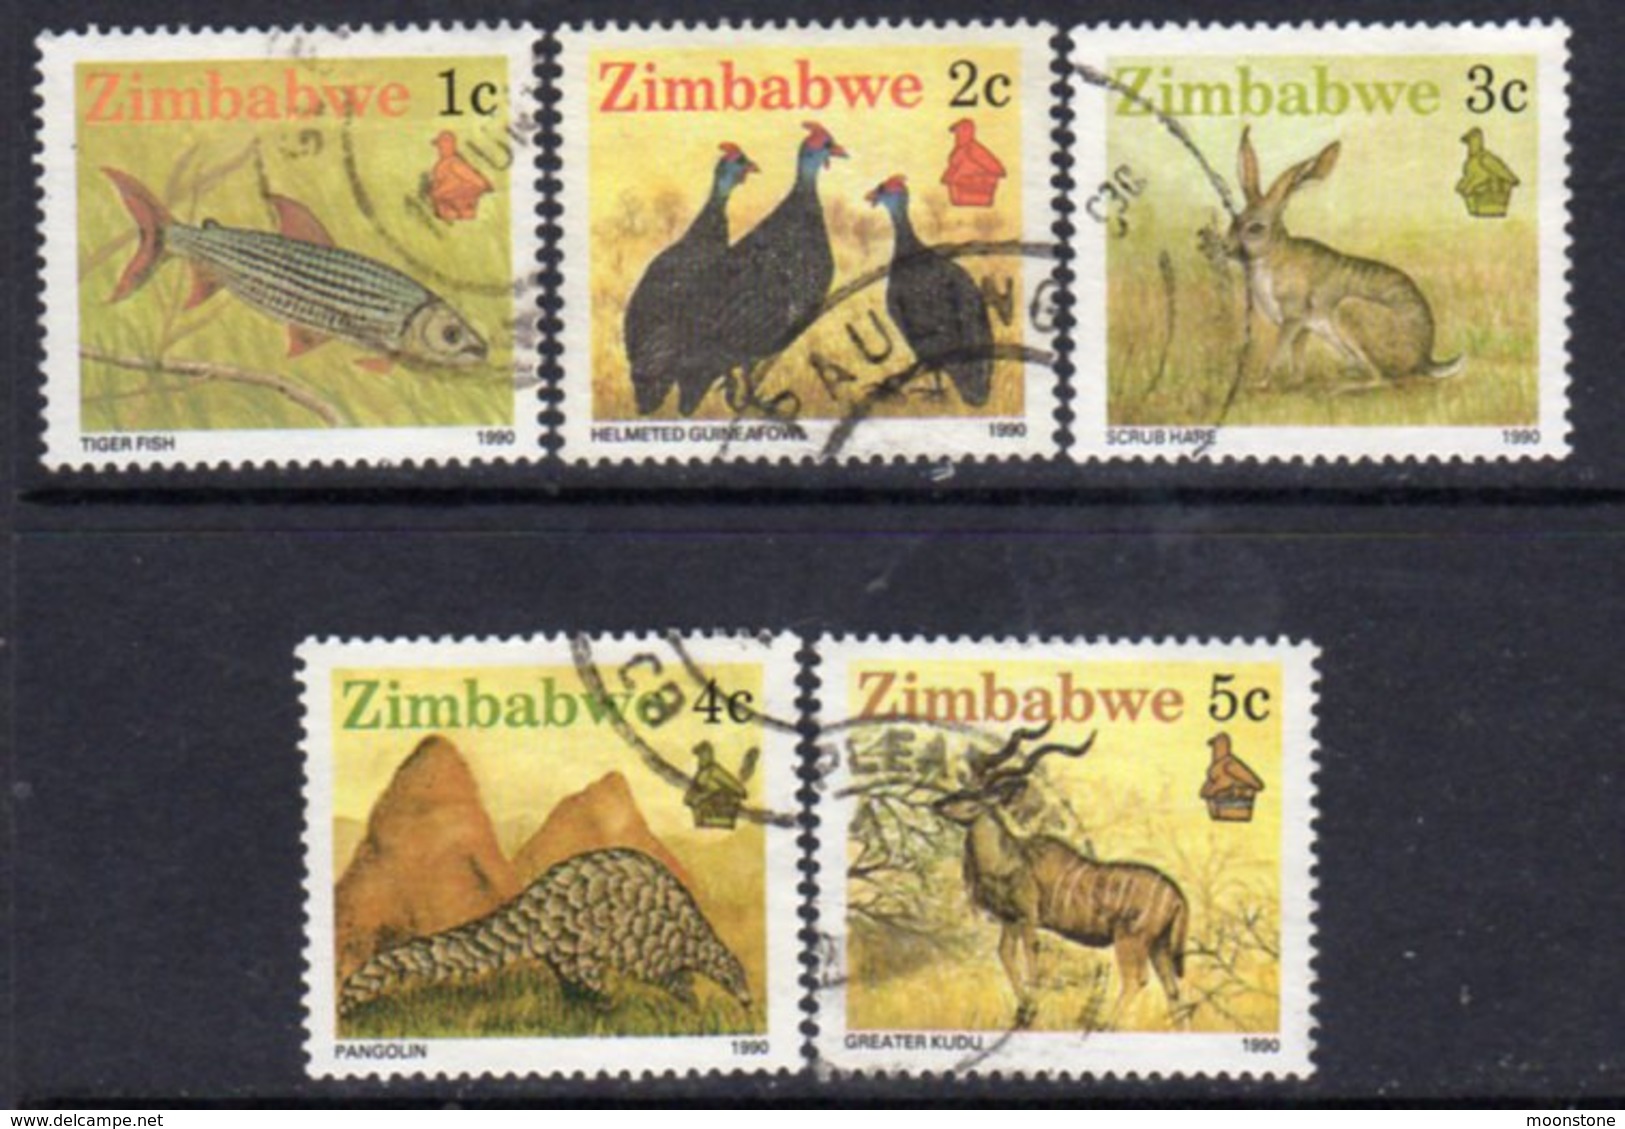 Zimbabwe 1990 Definitives 1-5c Perf. 14½ Values, Used, SG 768a/71a (BA2) - Zimbabwe (1980-...)